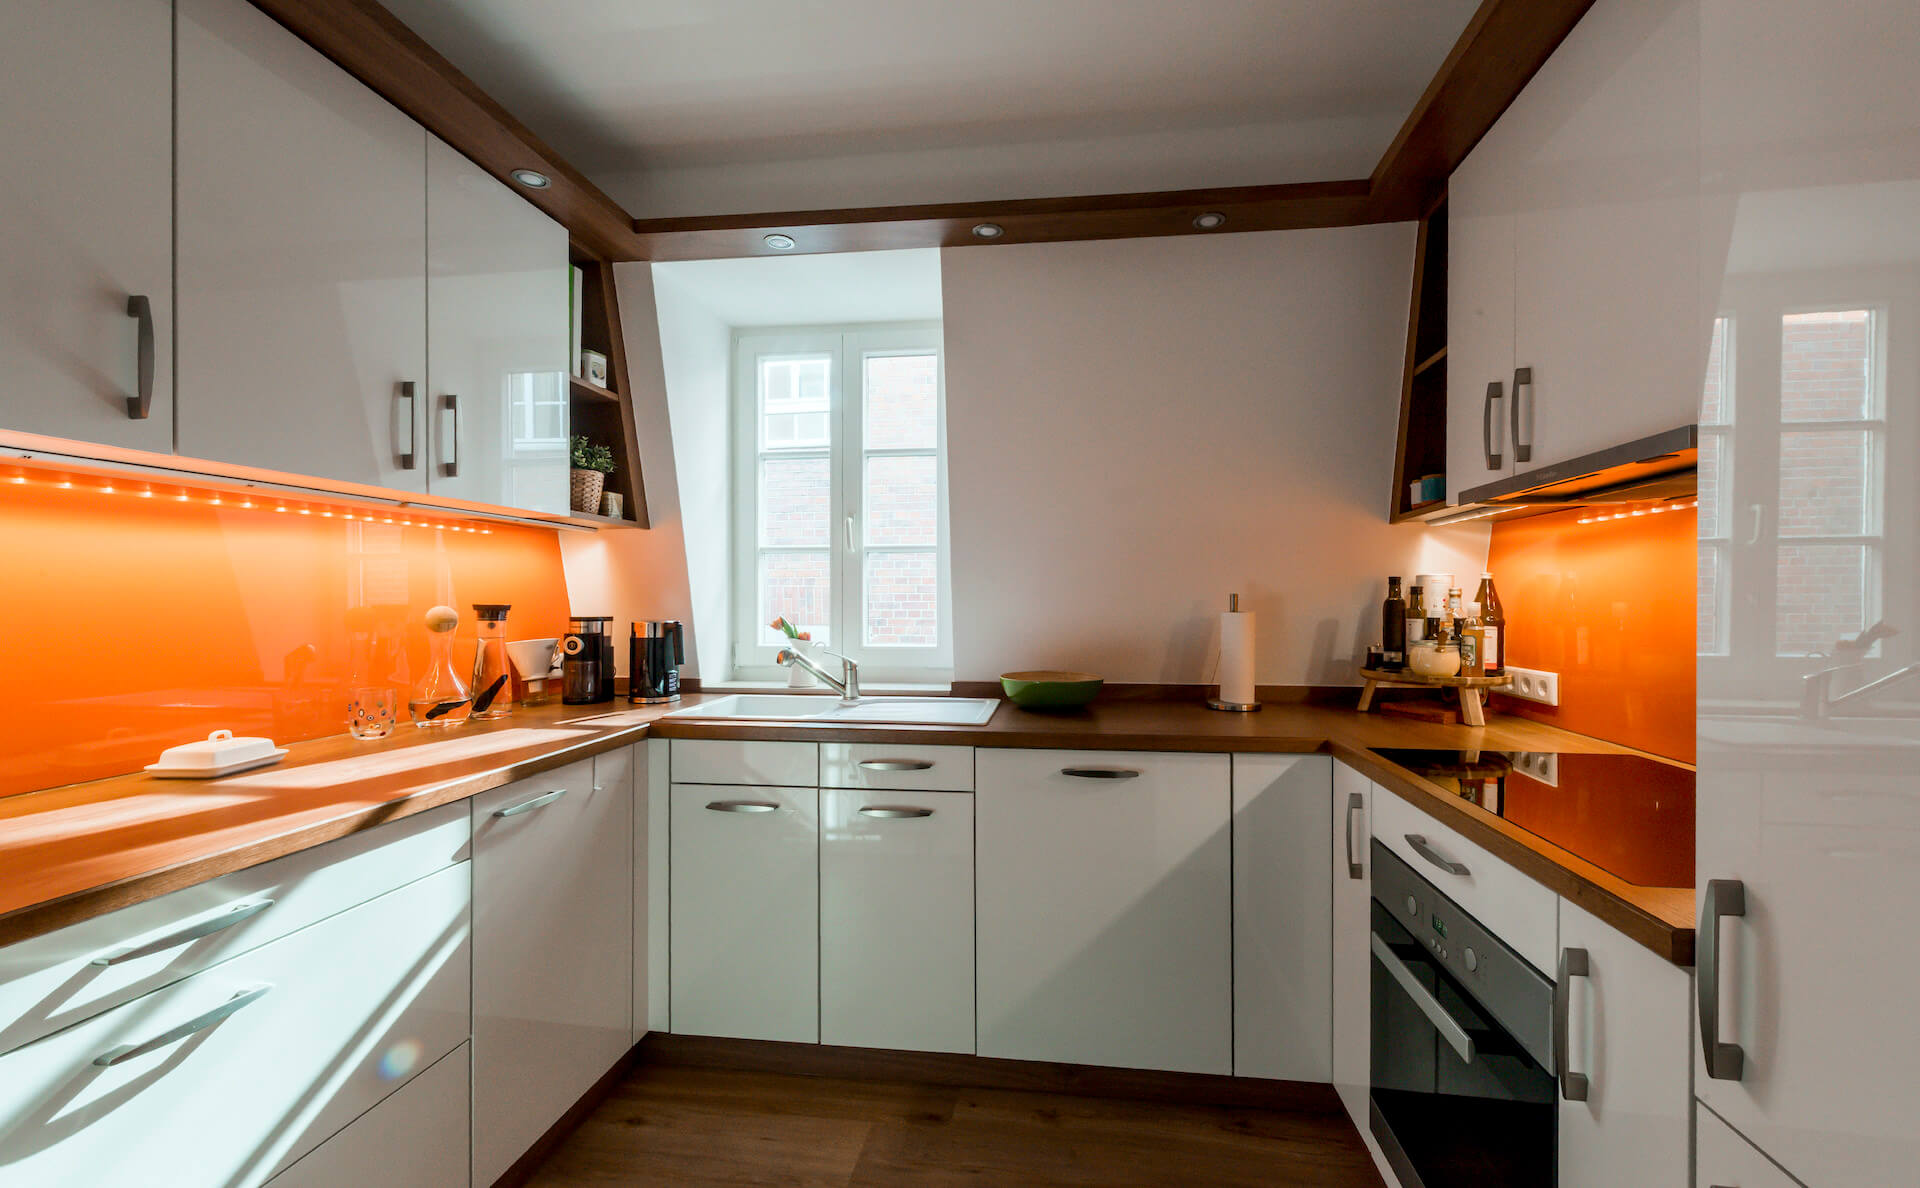 Küche in hochglänzendem Weiß mit orange farbener Rückwand